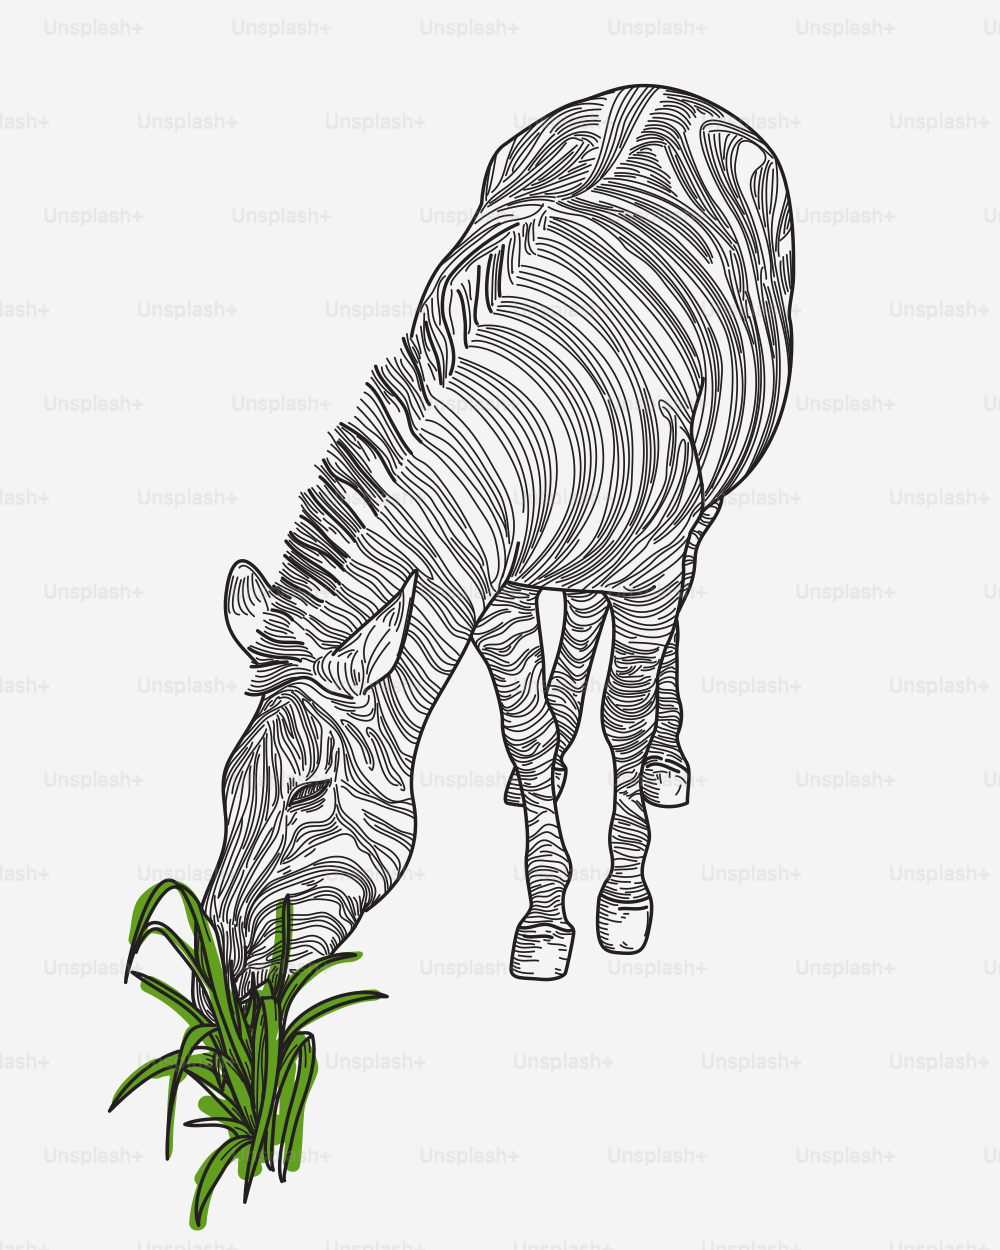 Illustrazione al tratto di una zebra che fa uno spuntino su un po' d'erba.